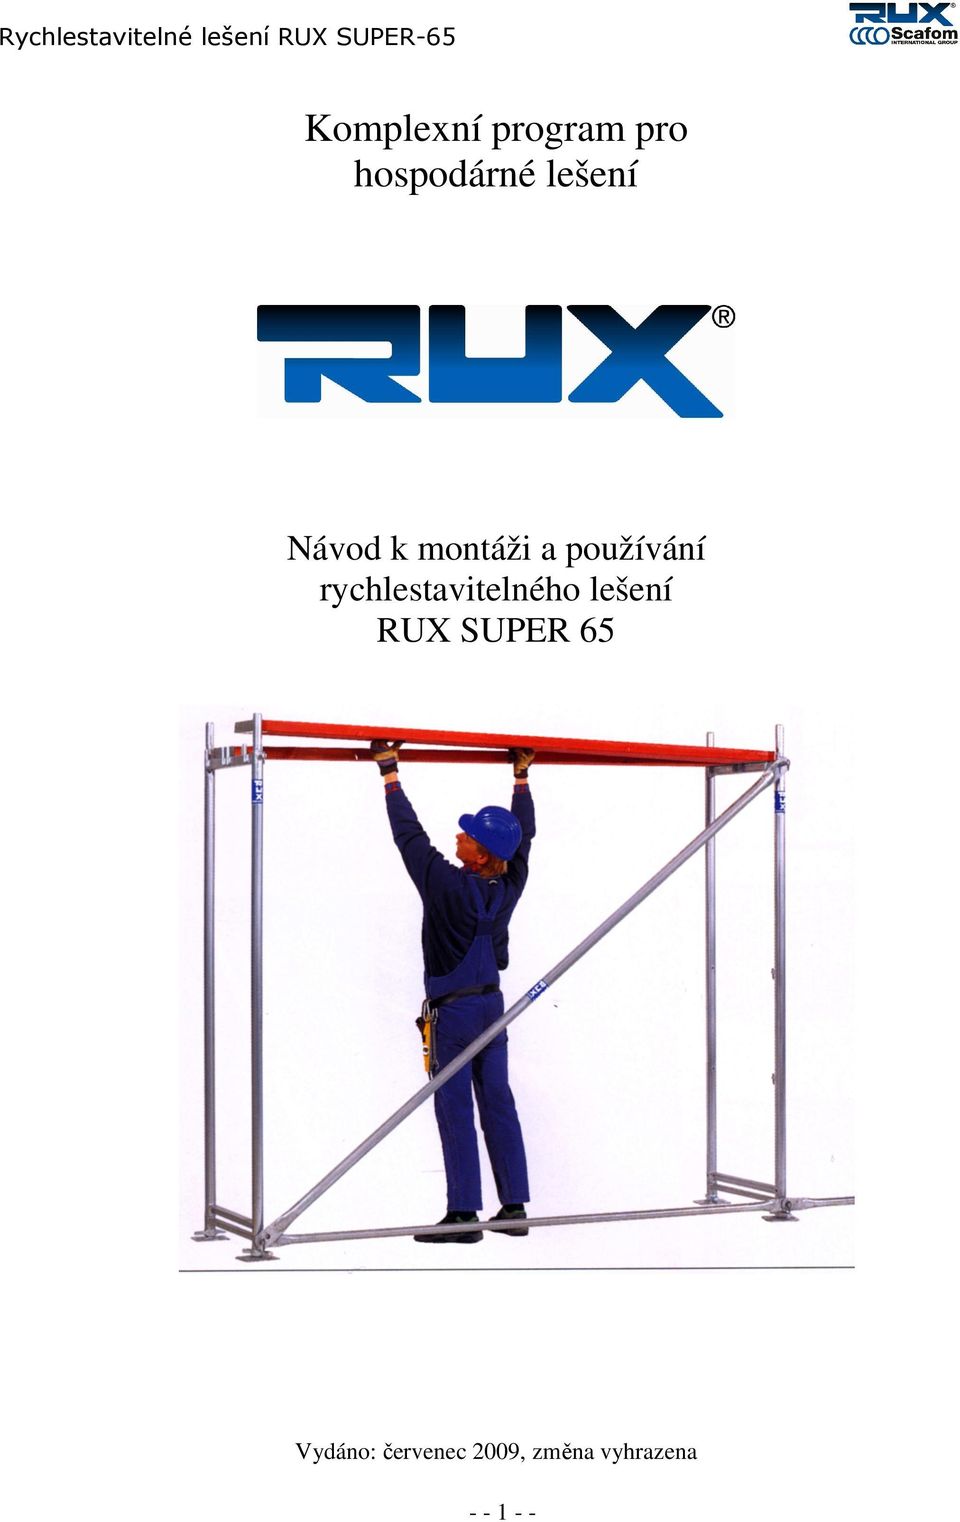 rychlestavitelného lešení RUX SUPER 65